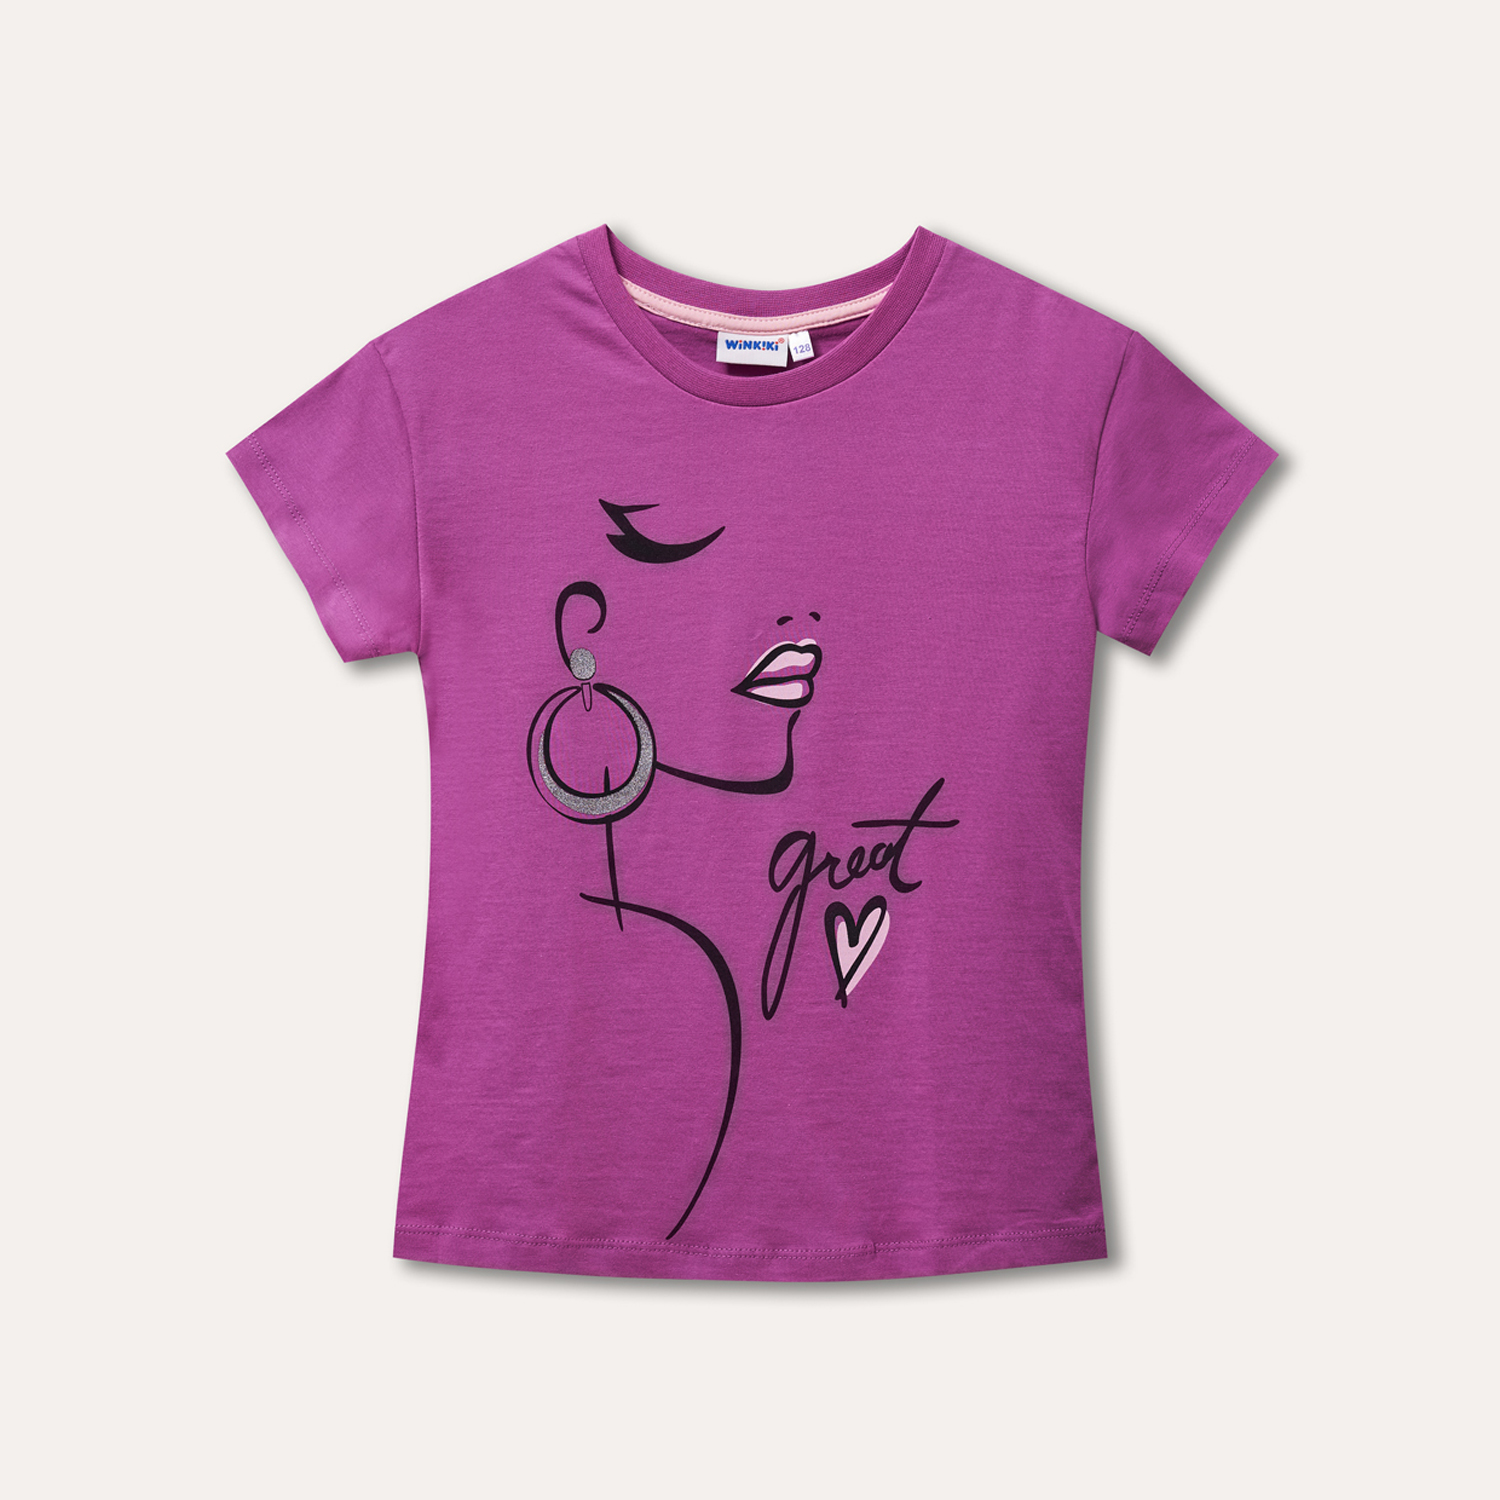 Dívčí tričko - WINKIKI WJG 11019, fialová/ 070 Barva: Fialová, Velikost: 128